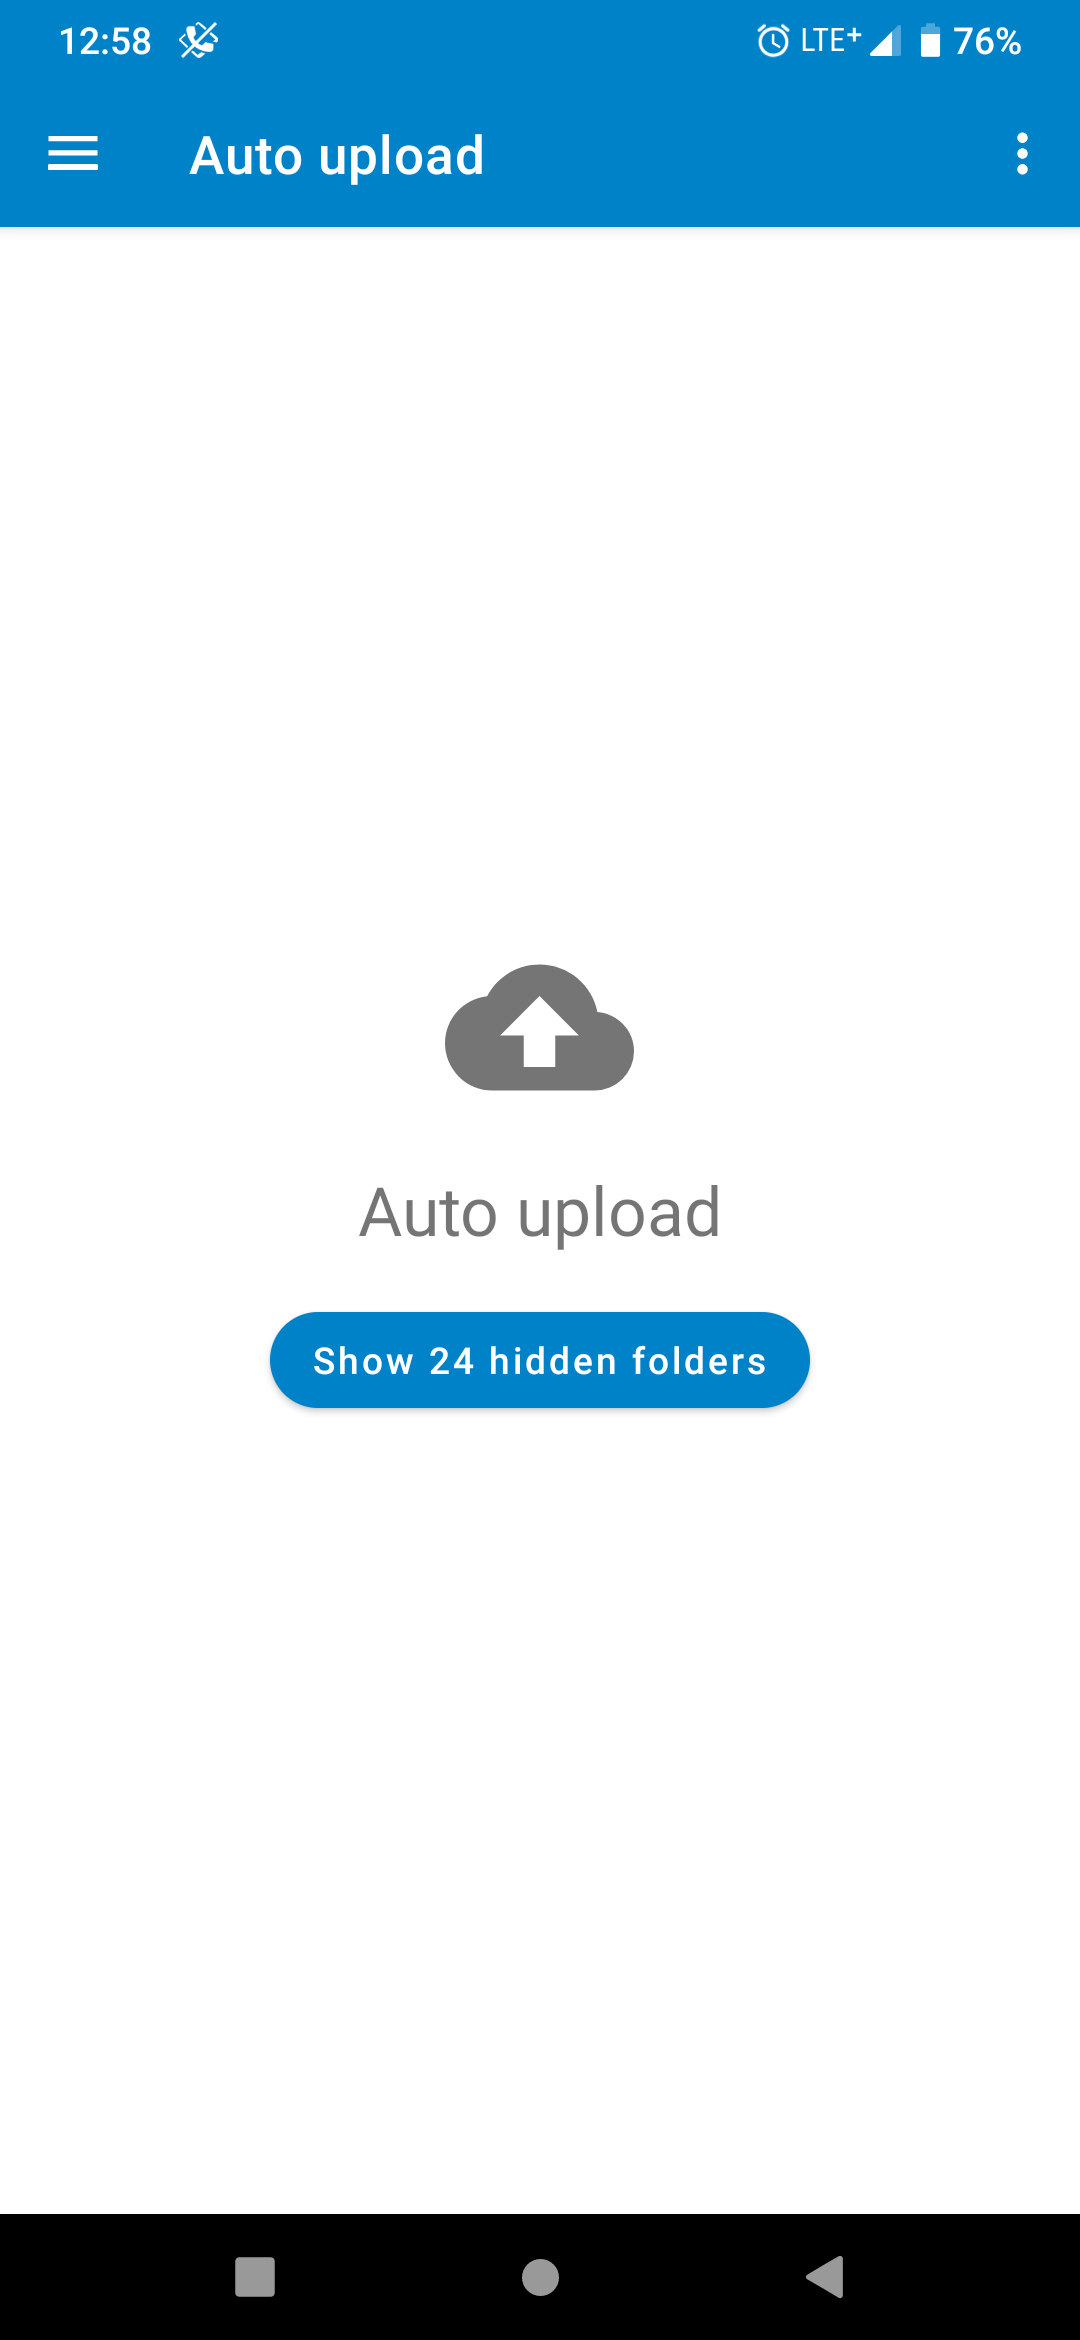 Show hidden folders